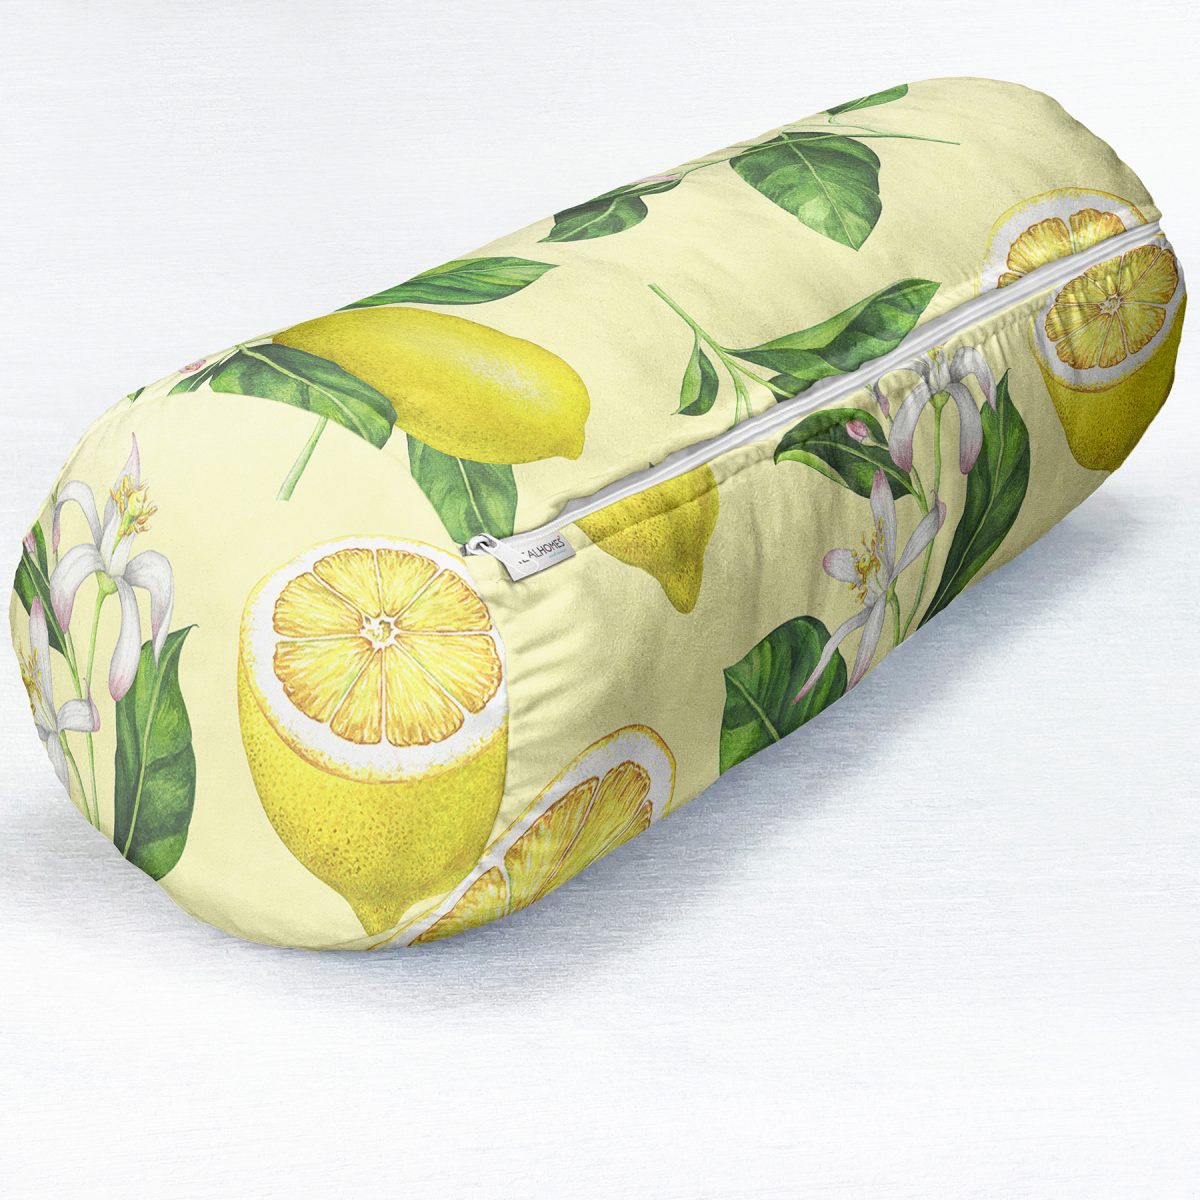 Krem Zeminli Limon Desenli Dekoratif İç Dolgulu Süet Silindir Yastık Kırlent - Bel Yastığı Realhomes